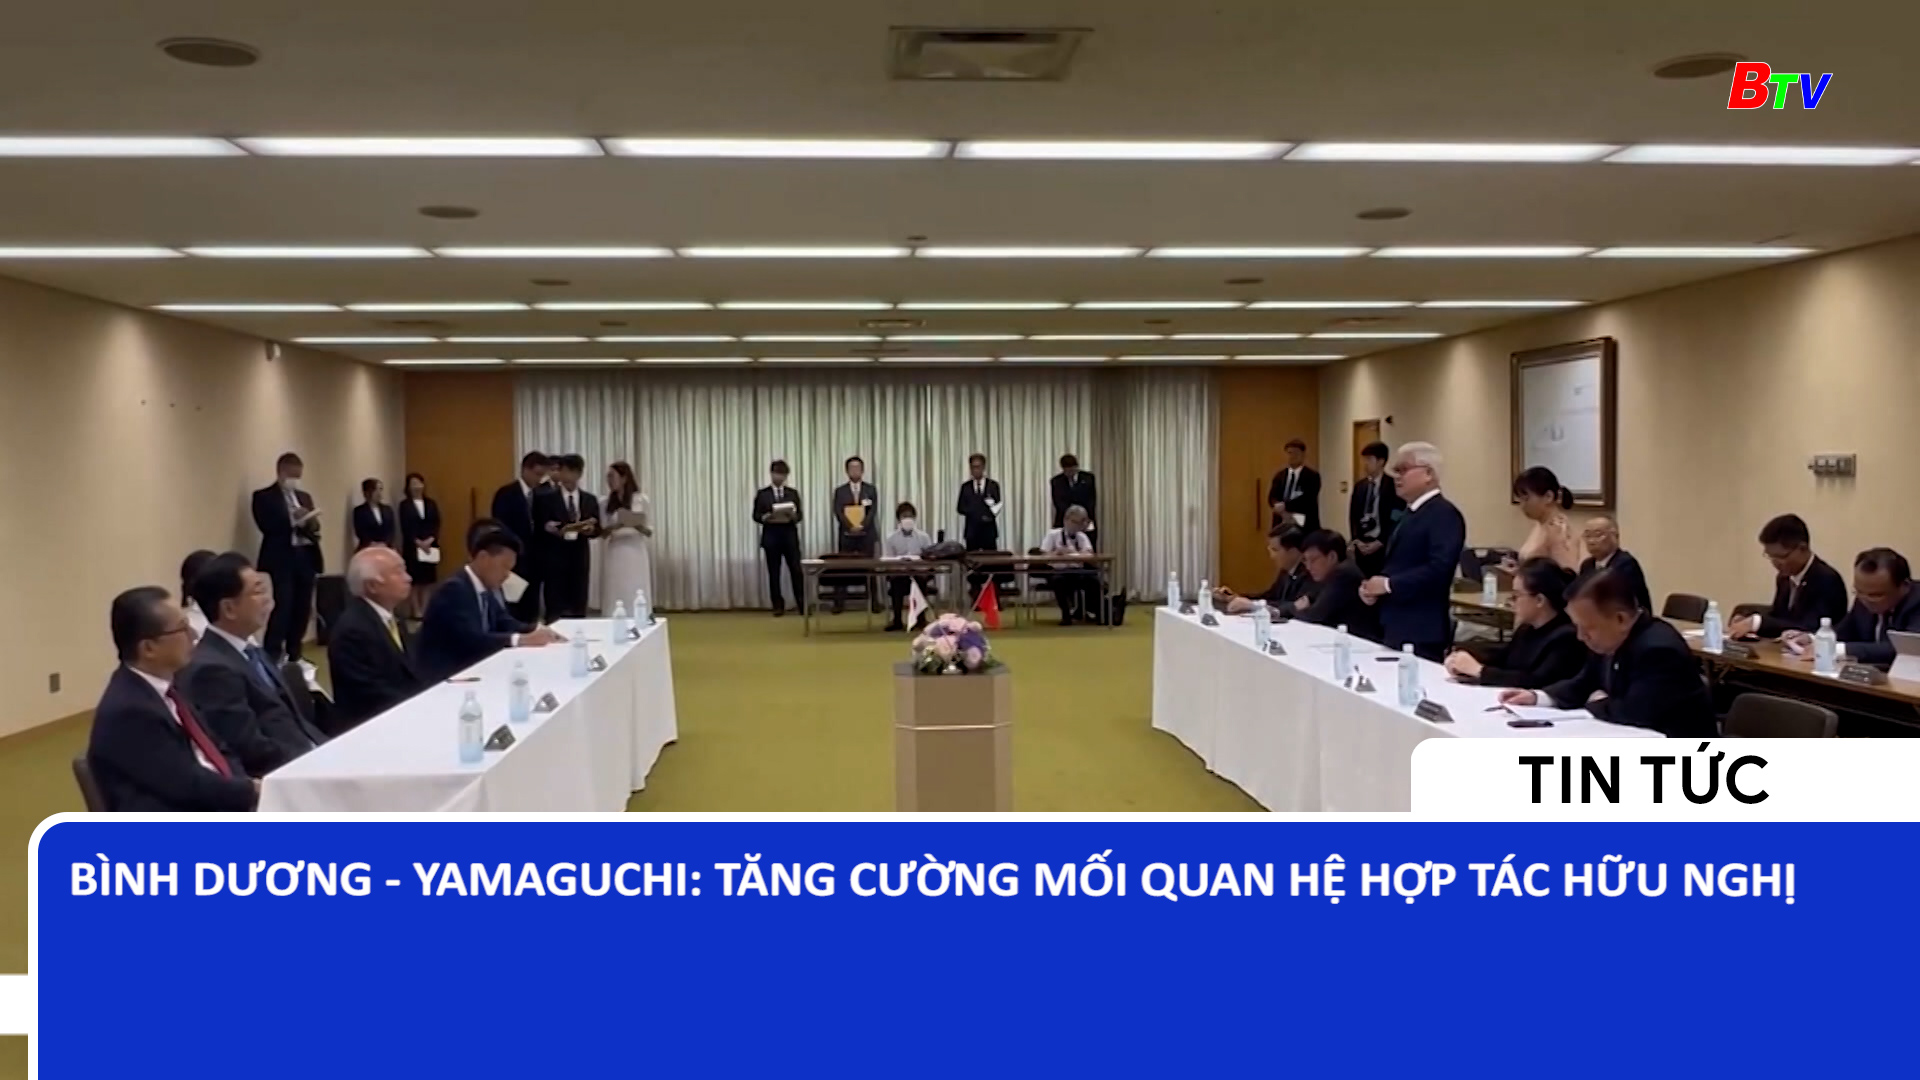 Bình Dương – Yamaguchi: Tăng cường mối quan hệ hợp tác hữu nghị